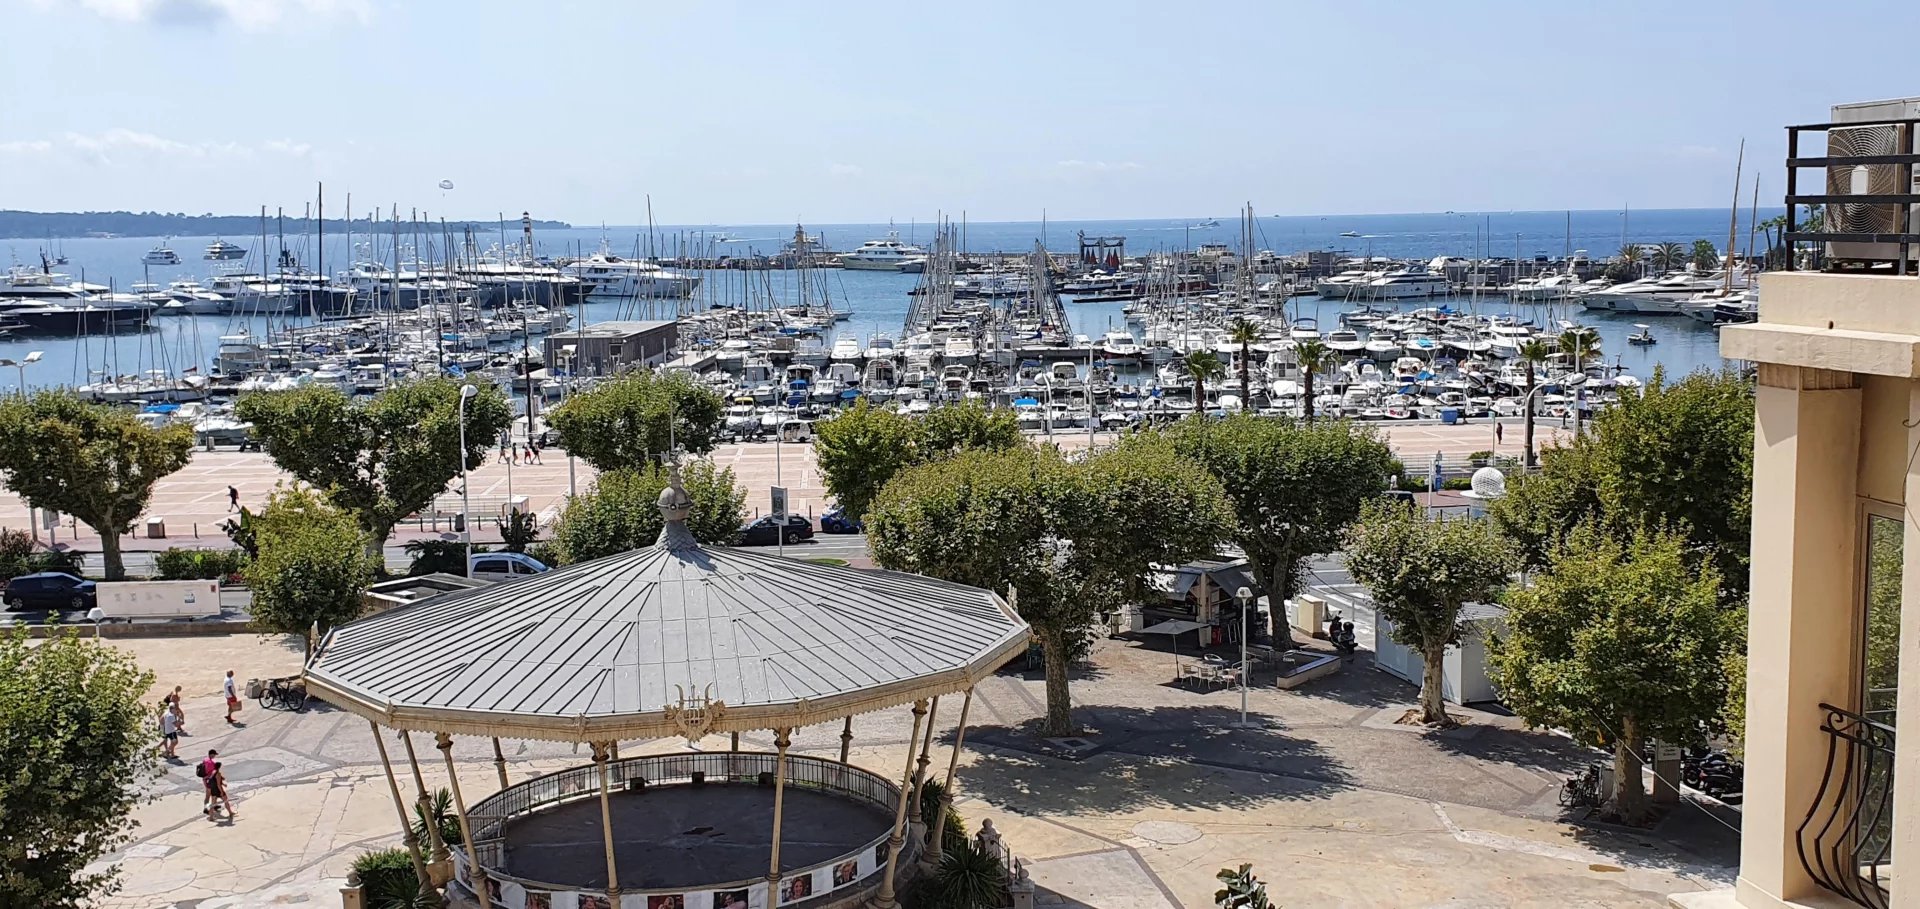 Sale Apartment - Cannes Port